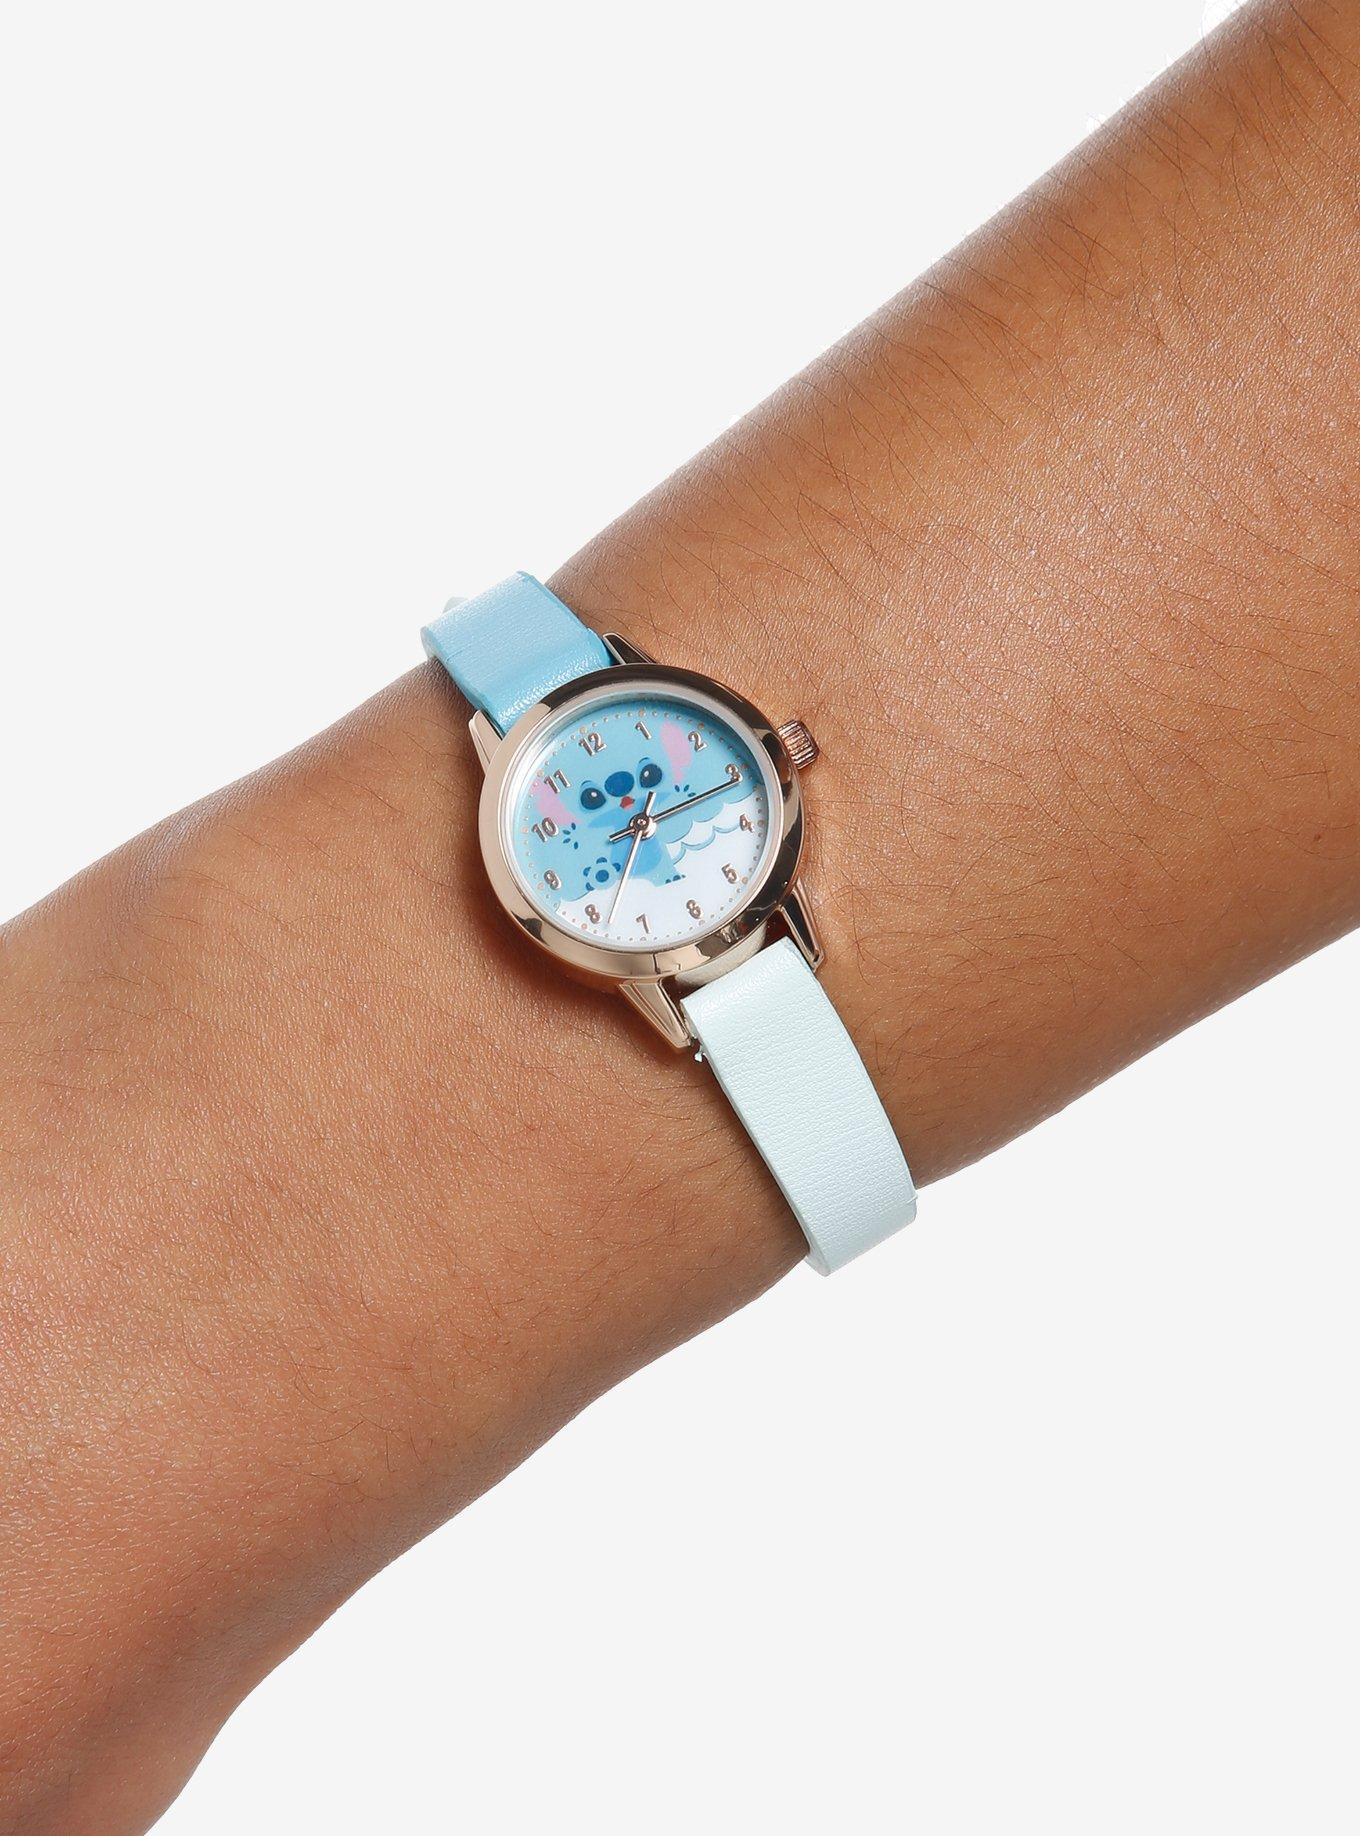 Lilo & Stitch Disney Dual-Tone Watch with Rubber Straps